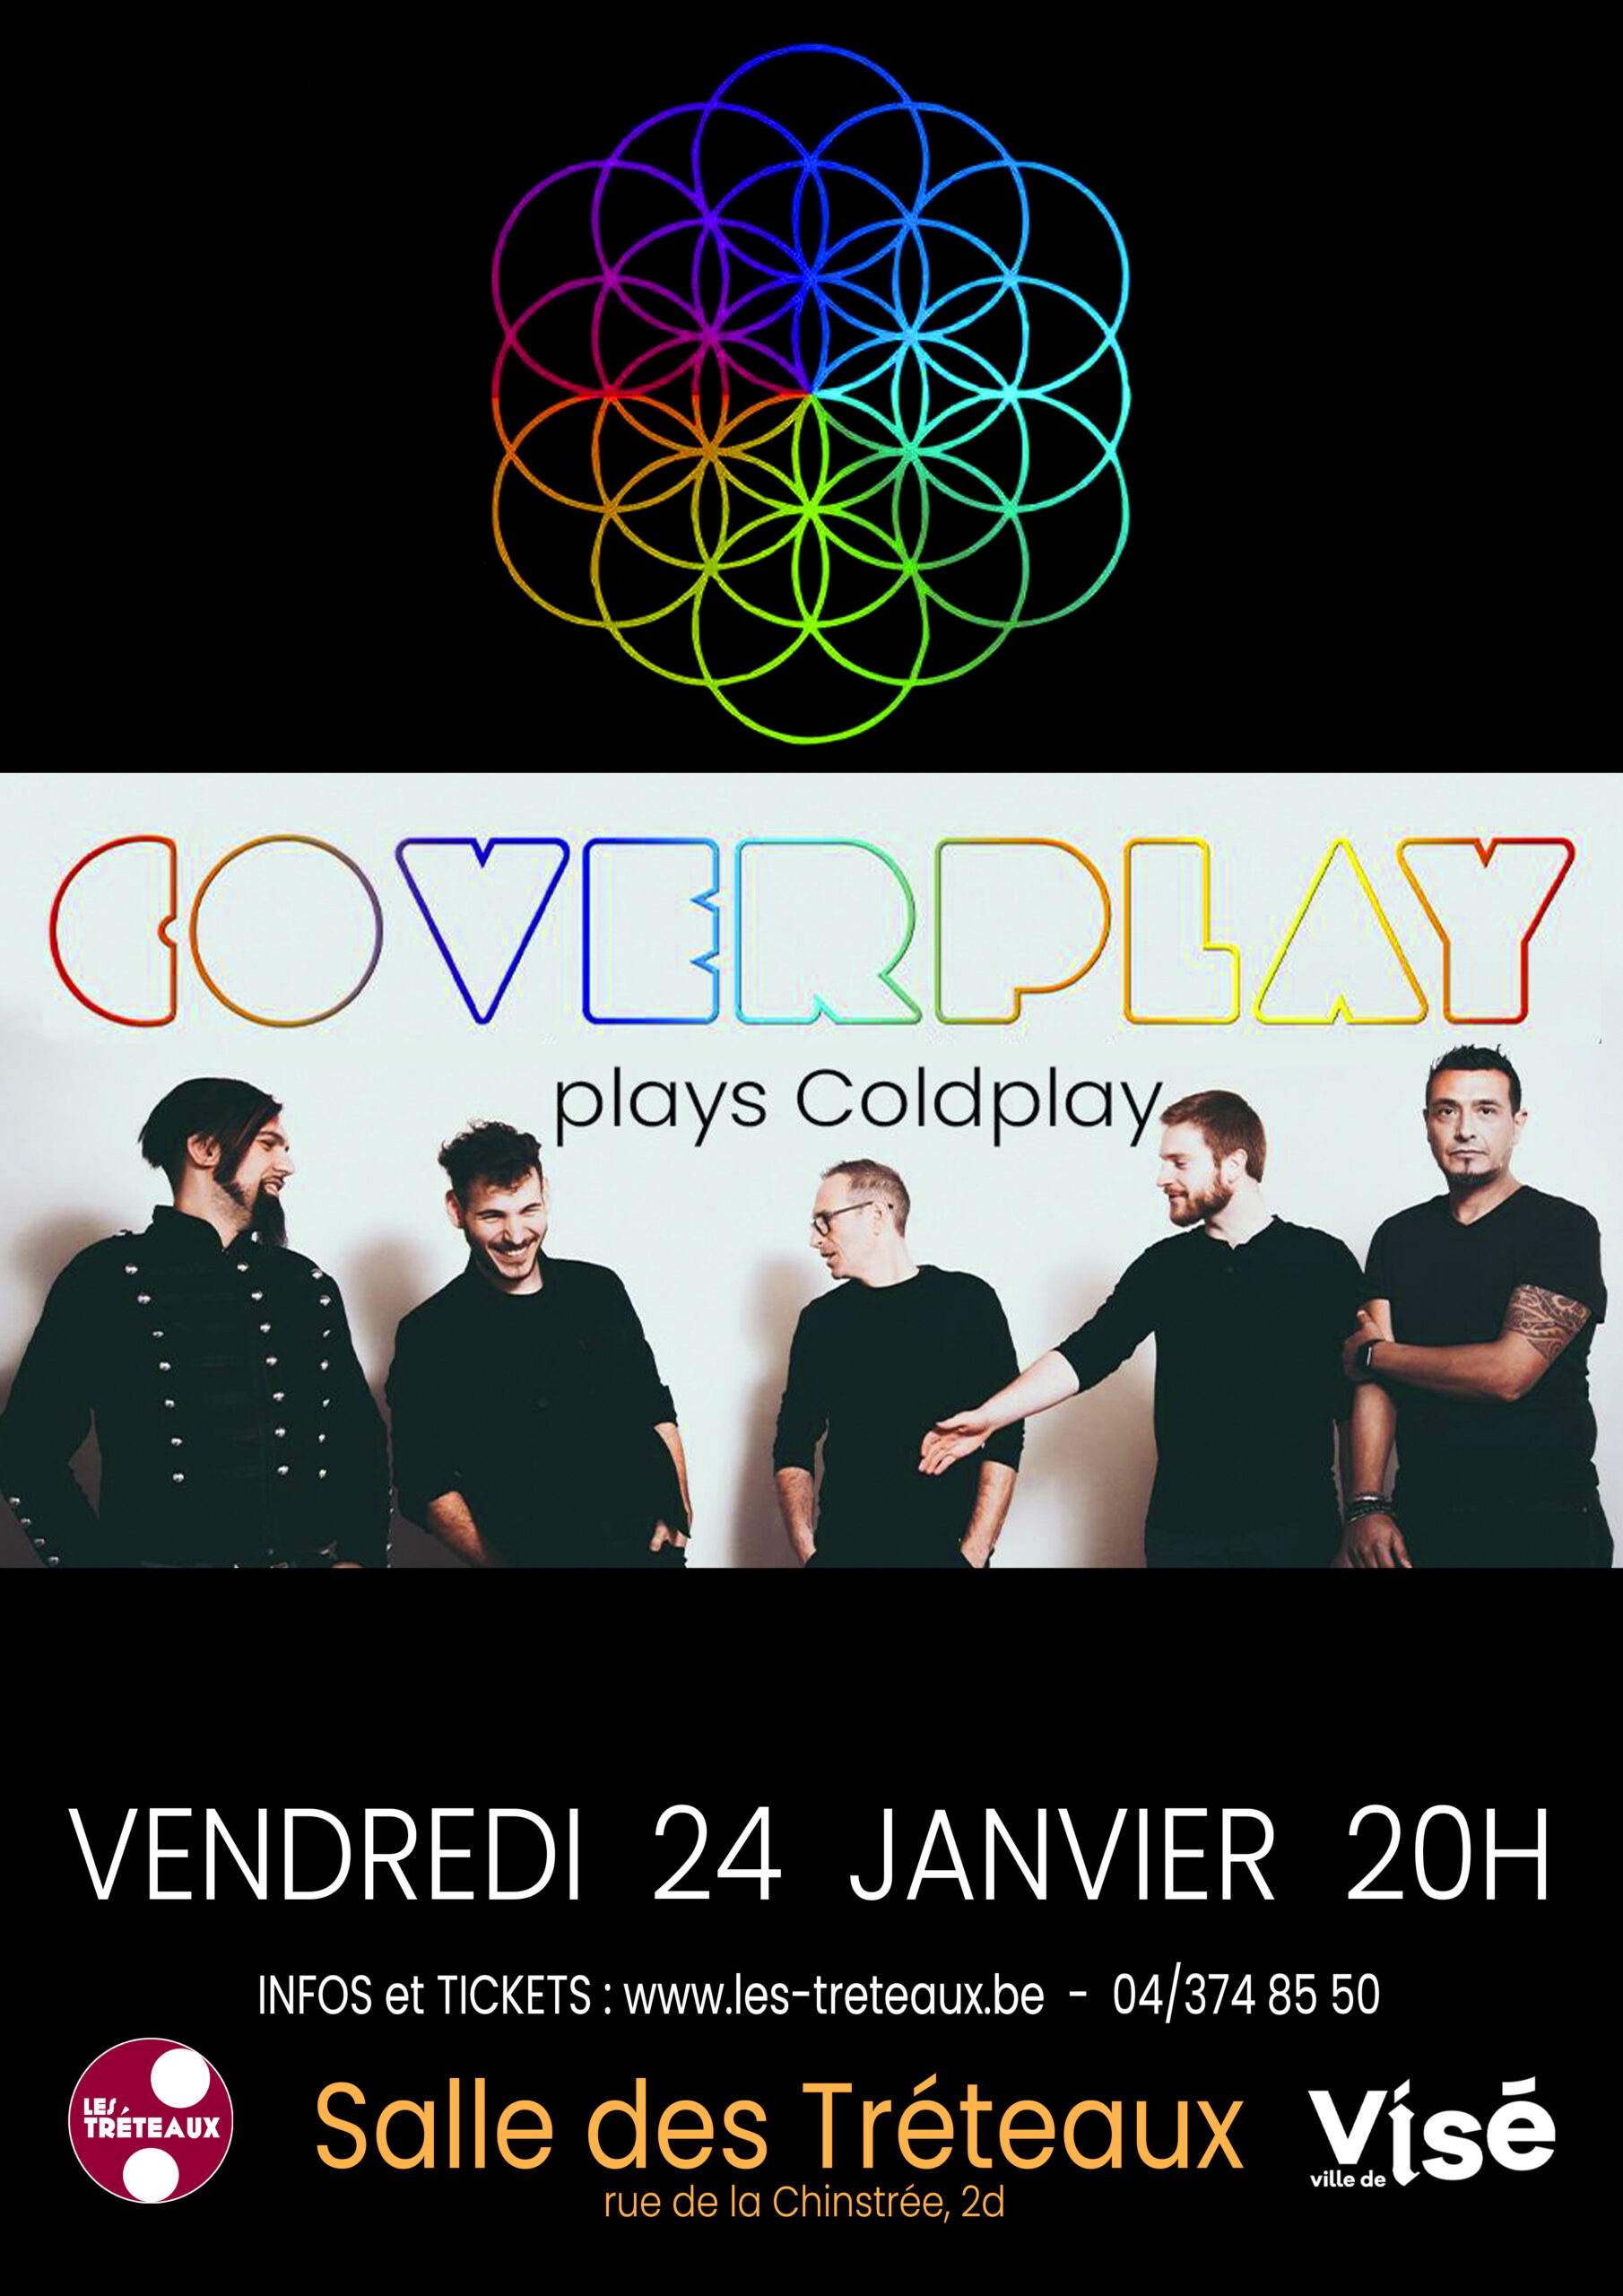 Coverplay plays Coldplay au CC de VISÉ - Salle Les Tréteaux